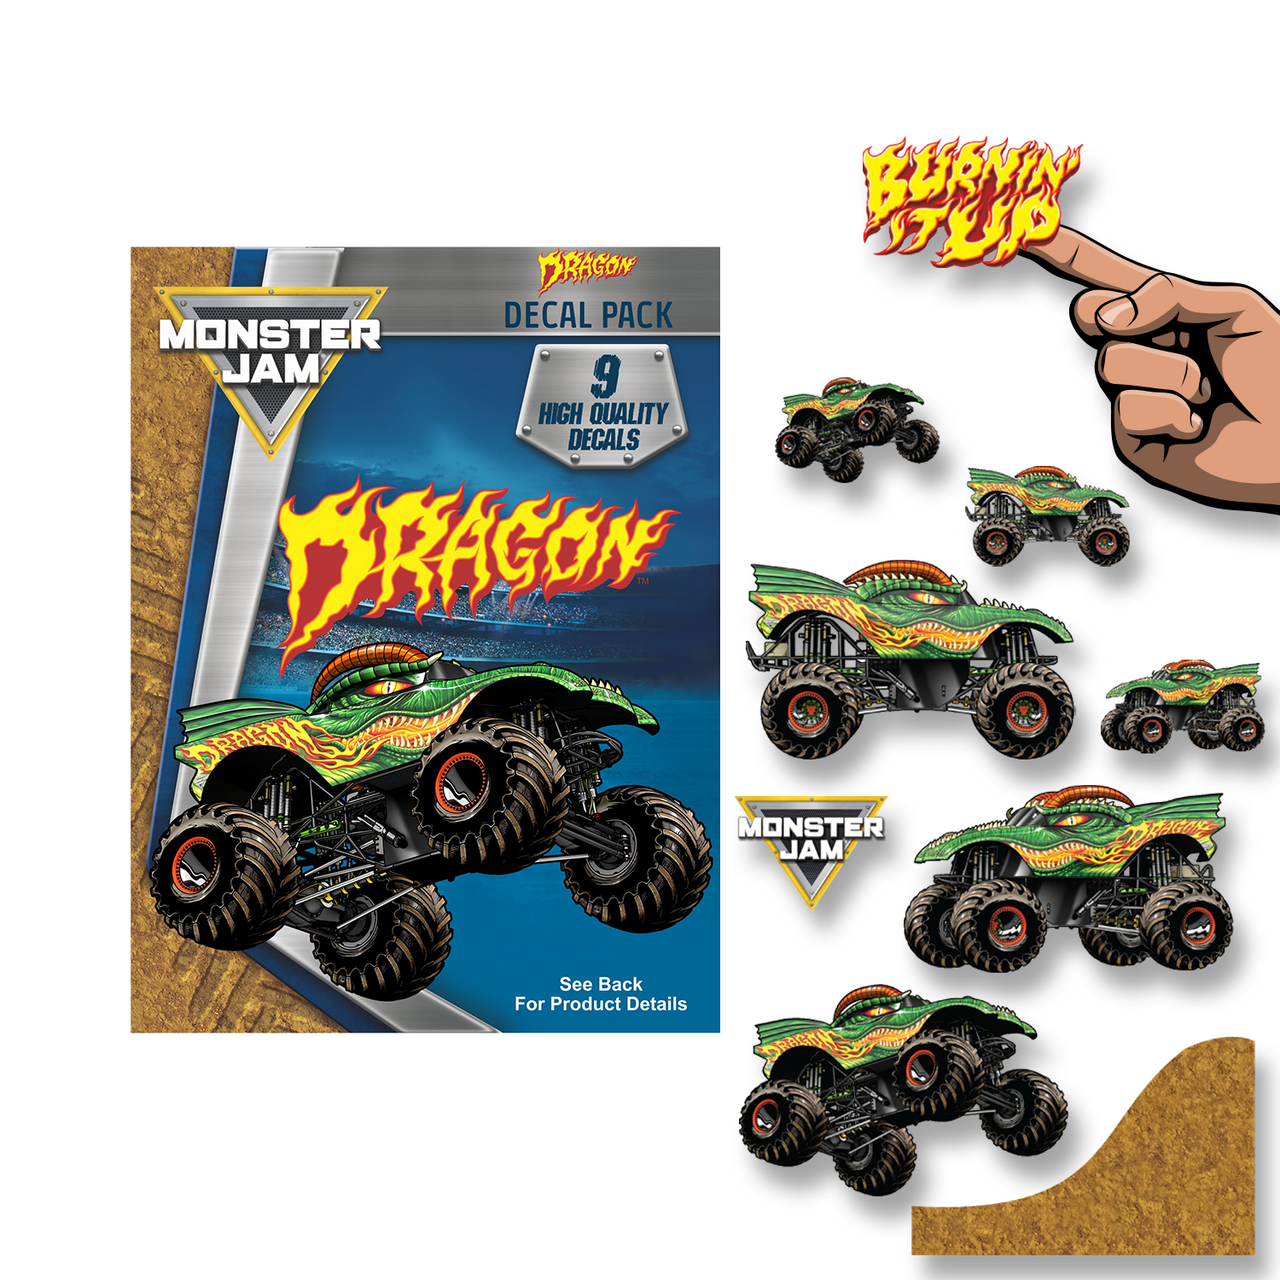 Monster Jam Dragon Value Pack